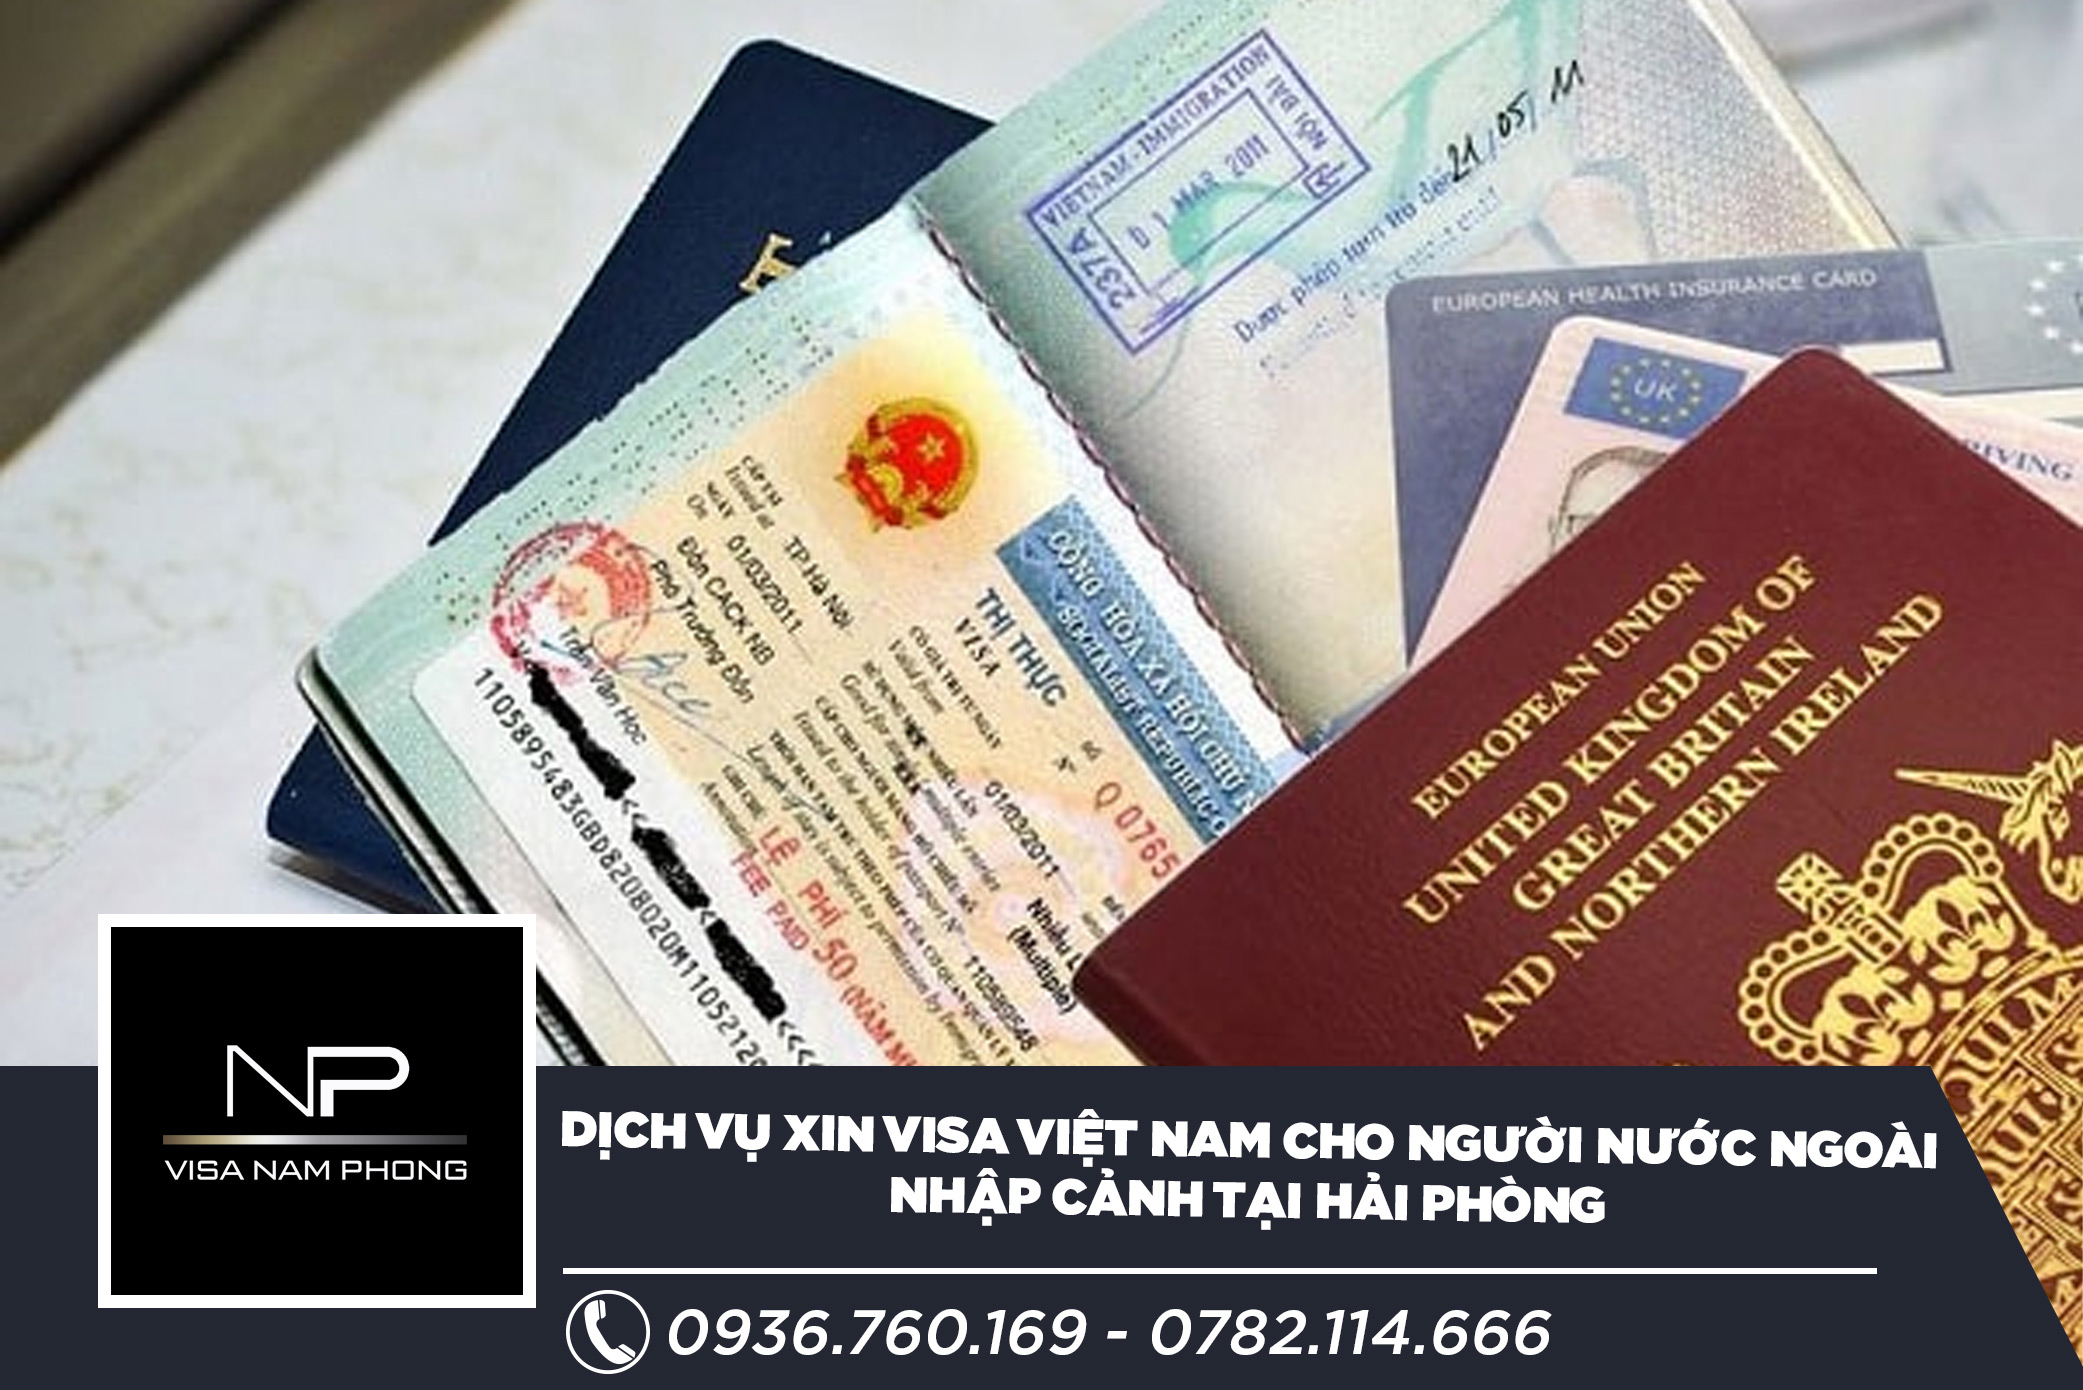 Dịch vụ xin visa Việt Nam cho người nước ngoài nhập cảnh tại Hải Phòng